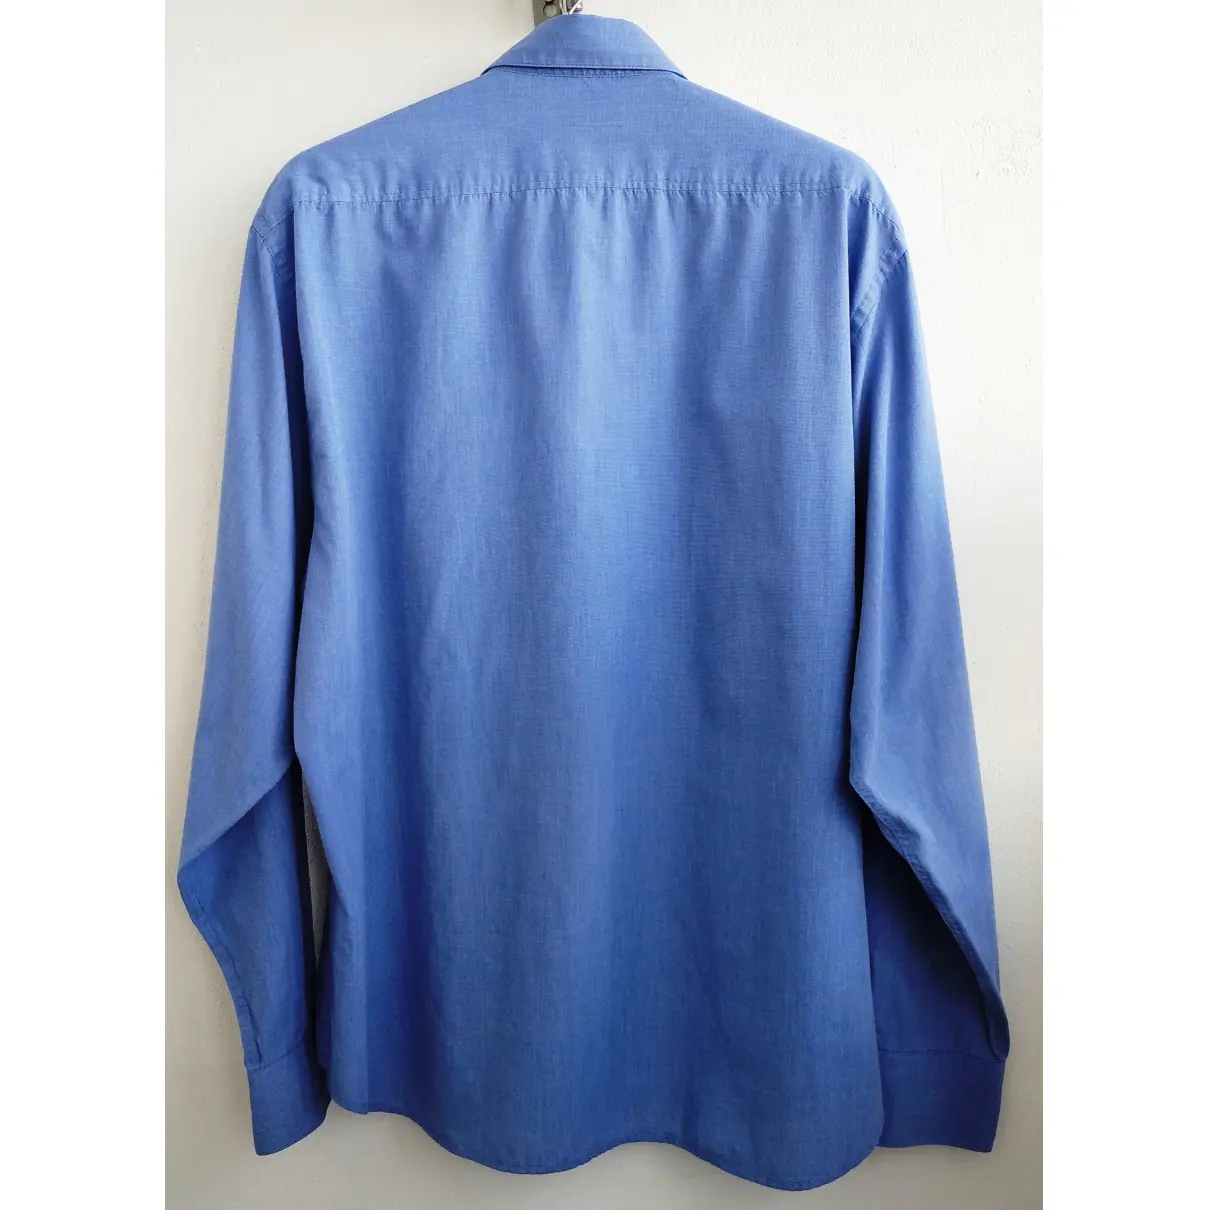 Buy Yves Saint Laurent Shirt online